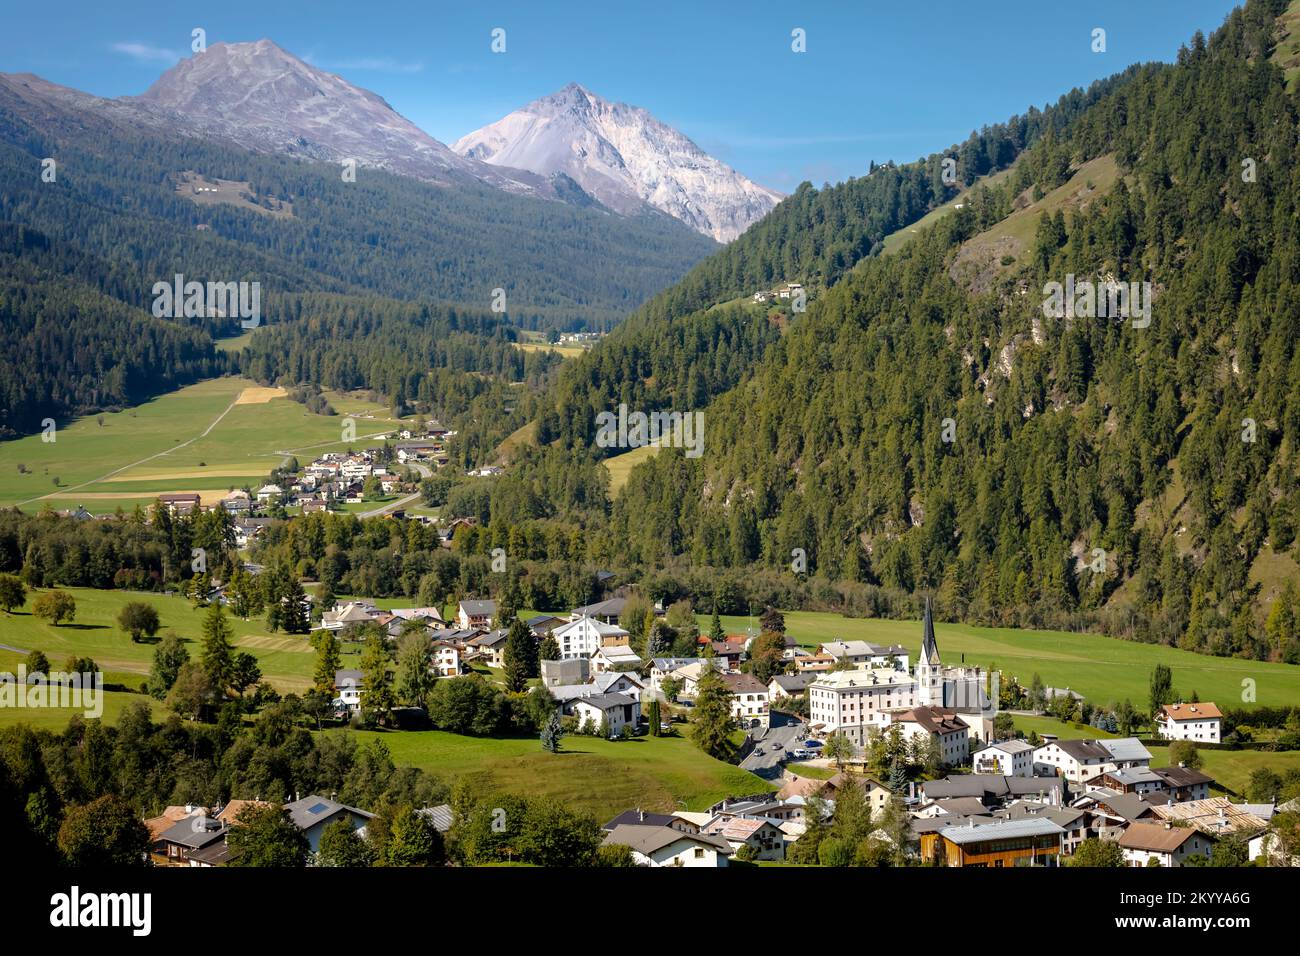 Paysage idyllique du village de Santa Maria, Engadine, Alpes suisses, Suisse Banque D'Images